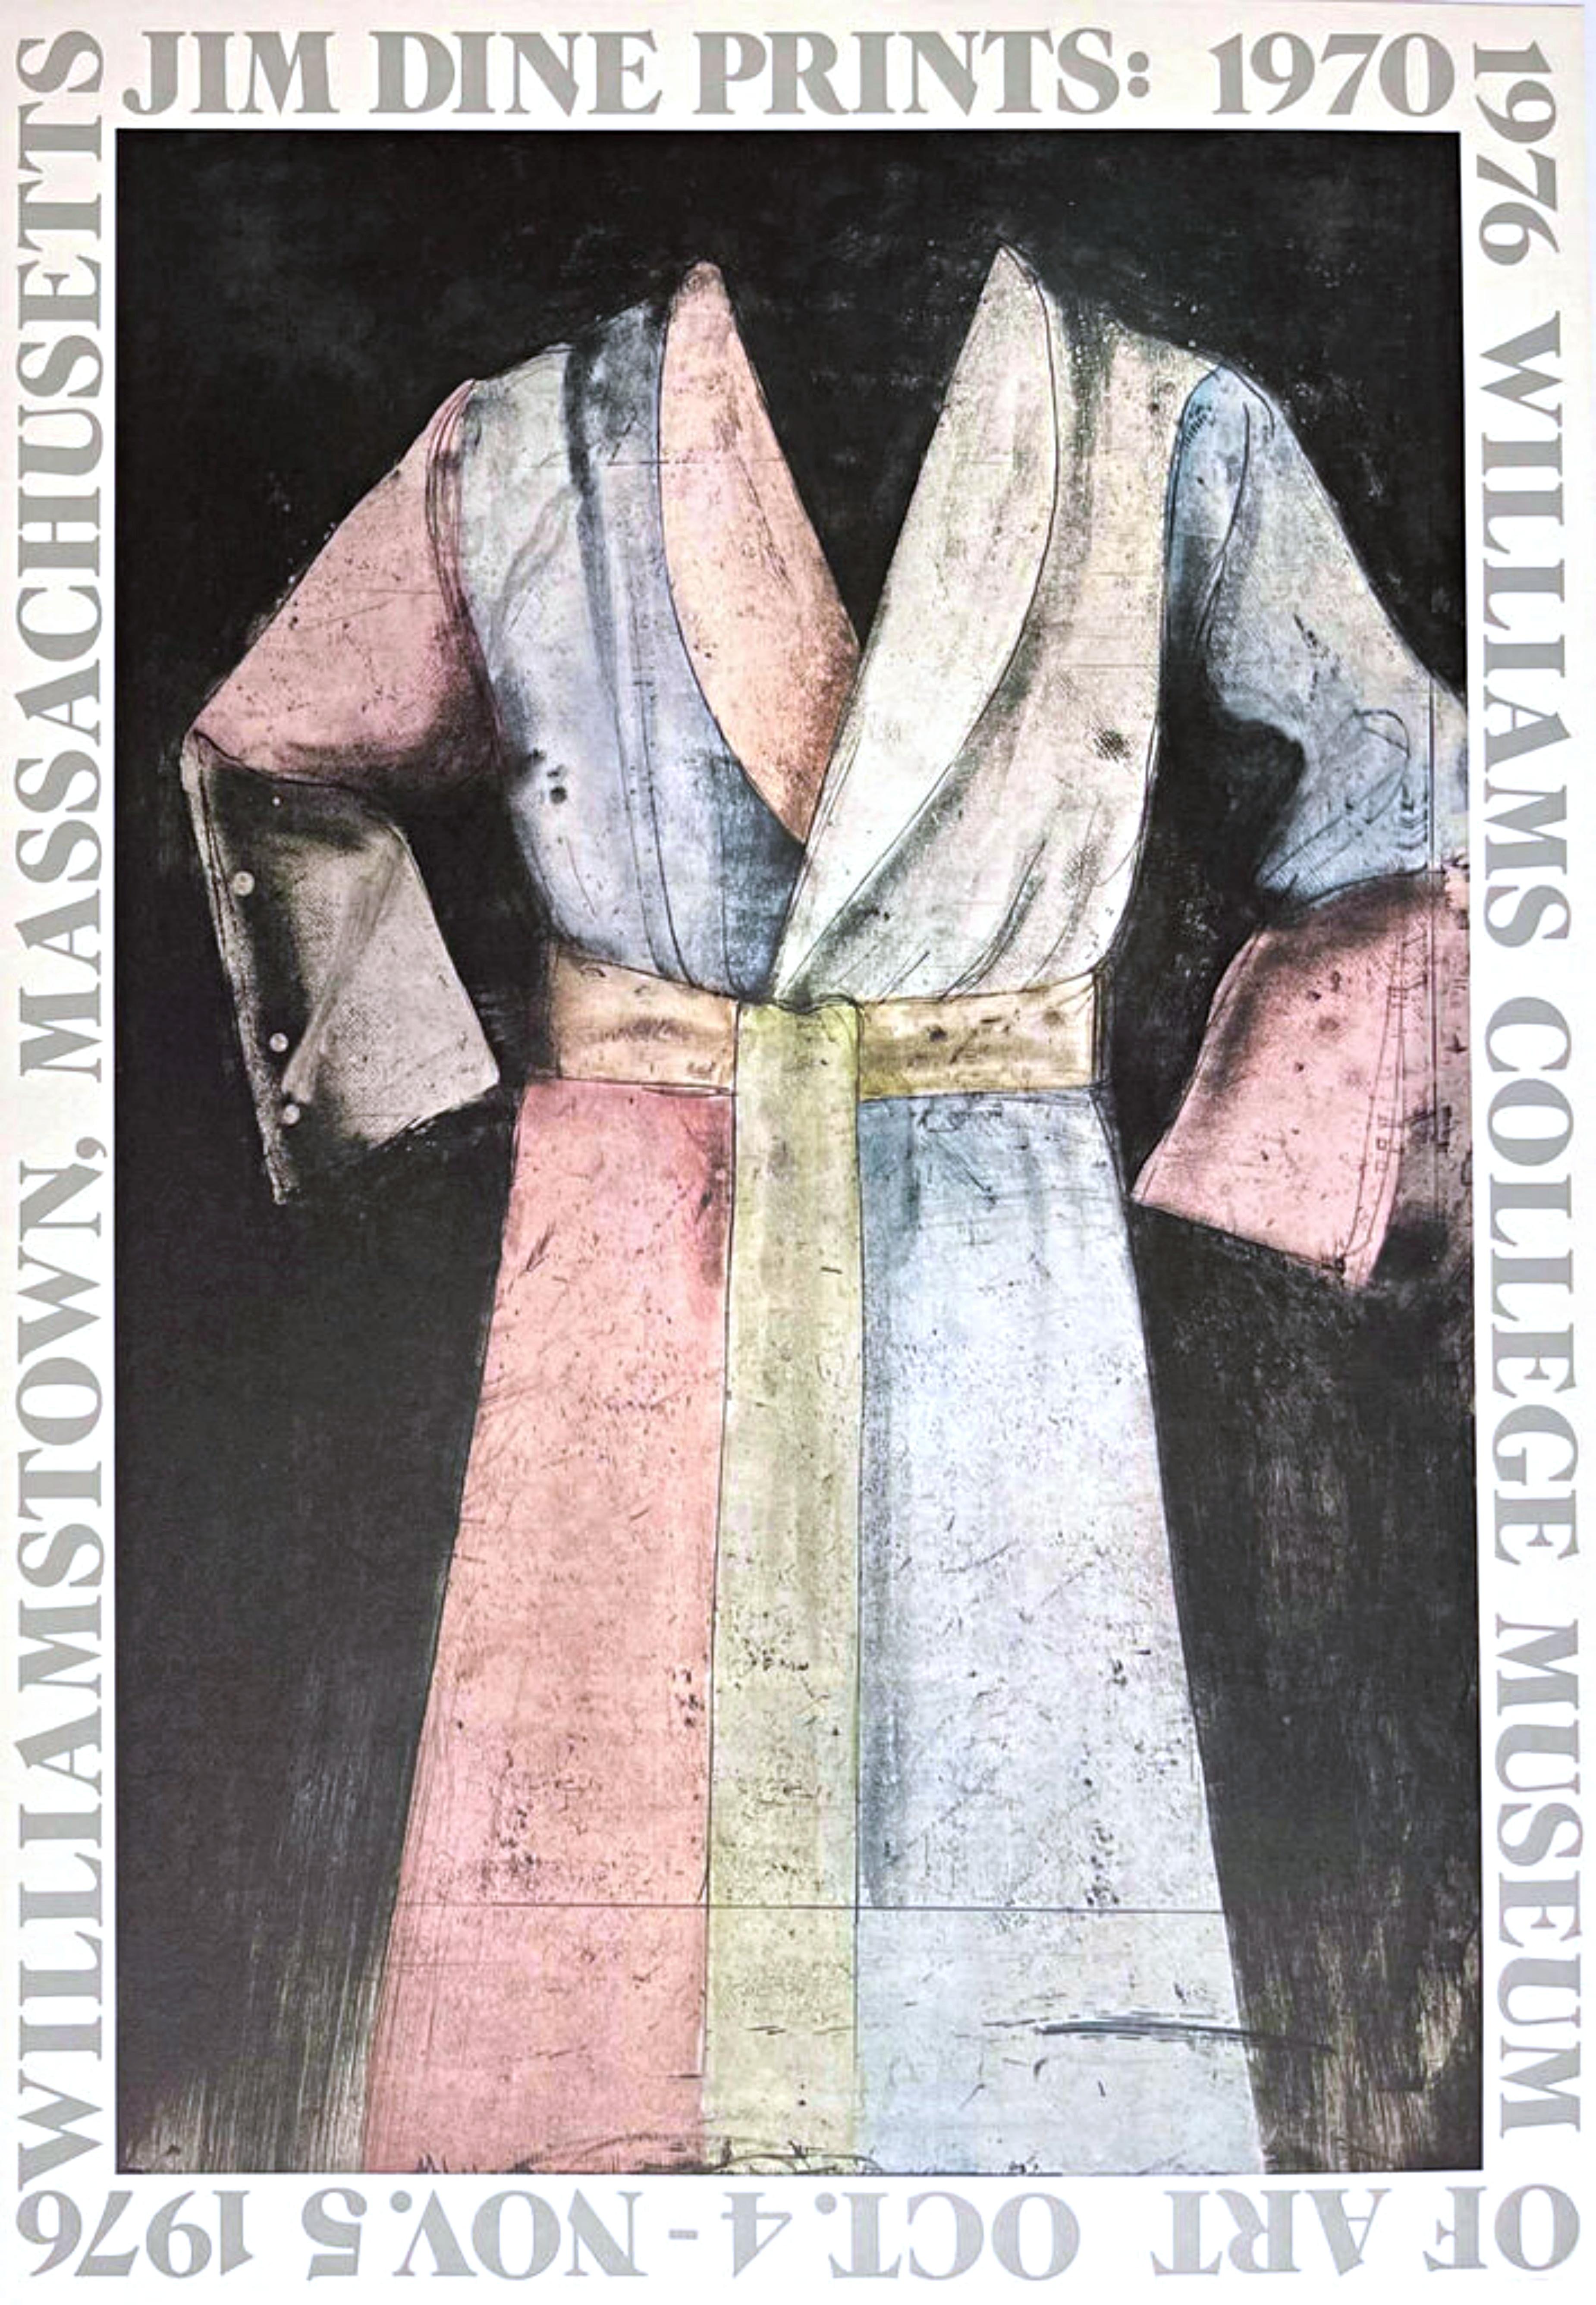 Abstract Print Jim Dine - Affiche d'exposition du Williams College Museum en édition limitée sur papier lithographique 